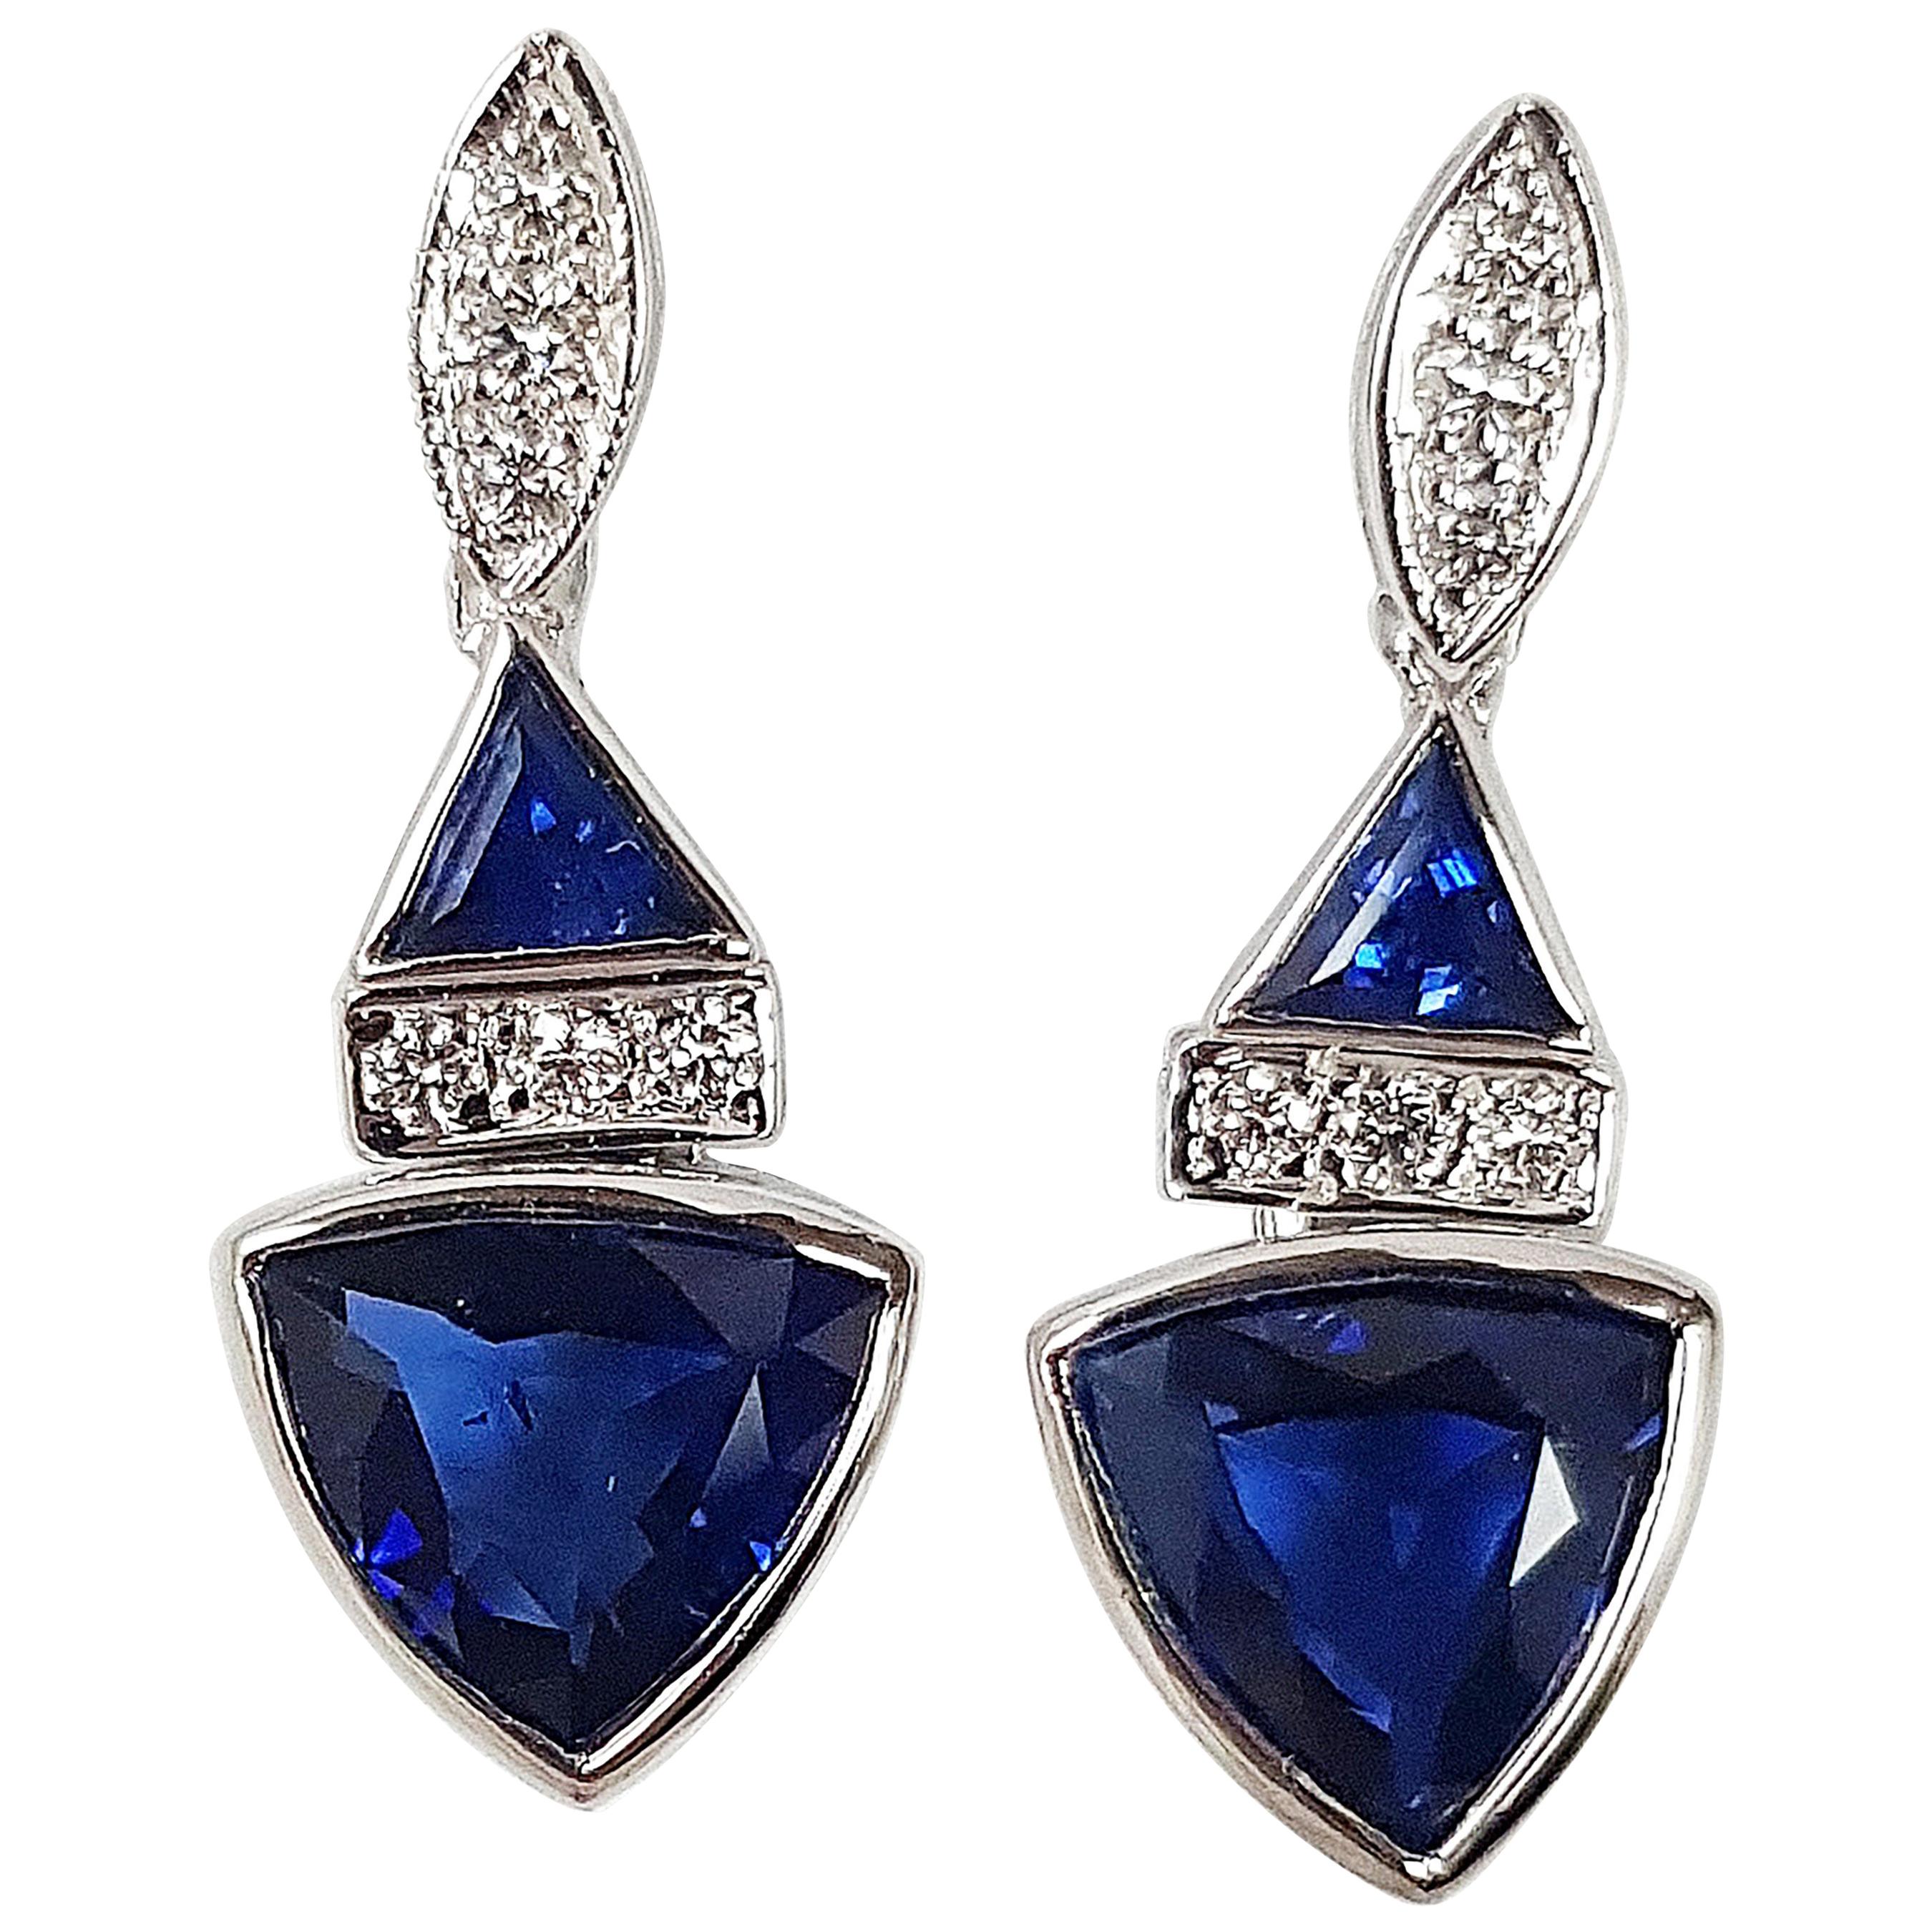 Triangular Shape Blue Sapphire, Diamond Earrings Set in 18k White Gold Settings